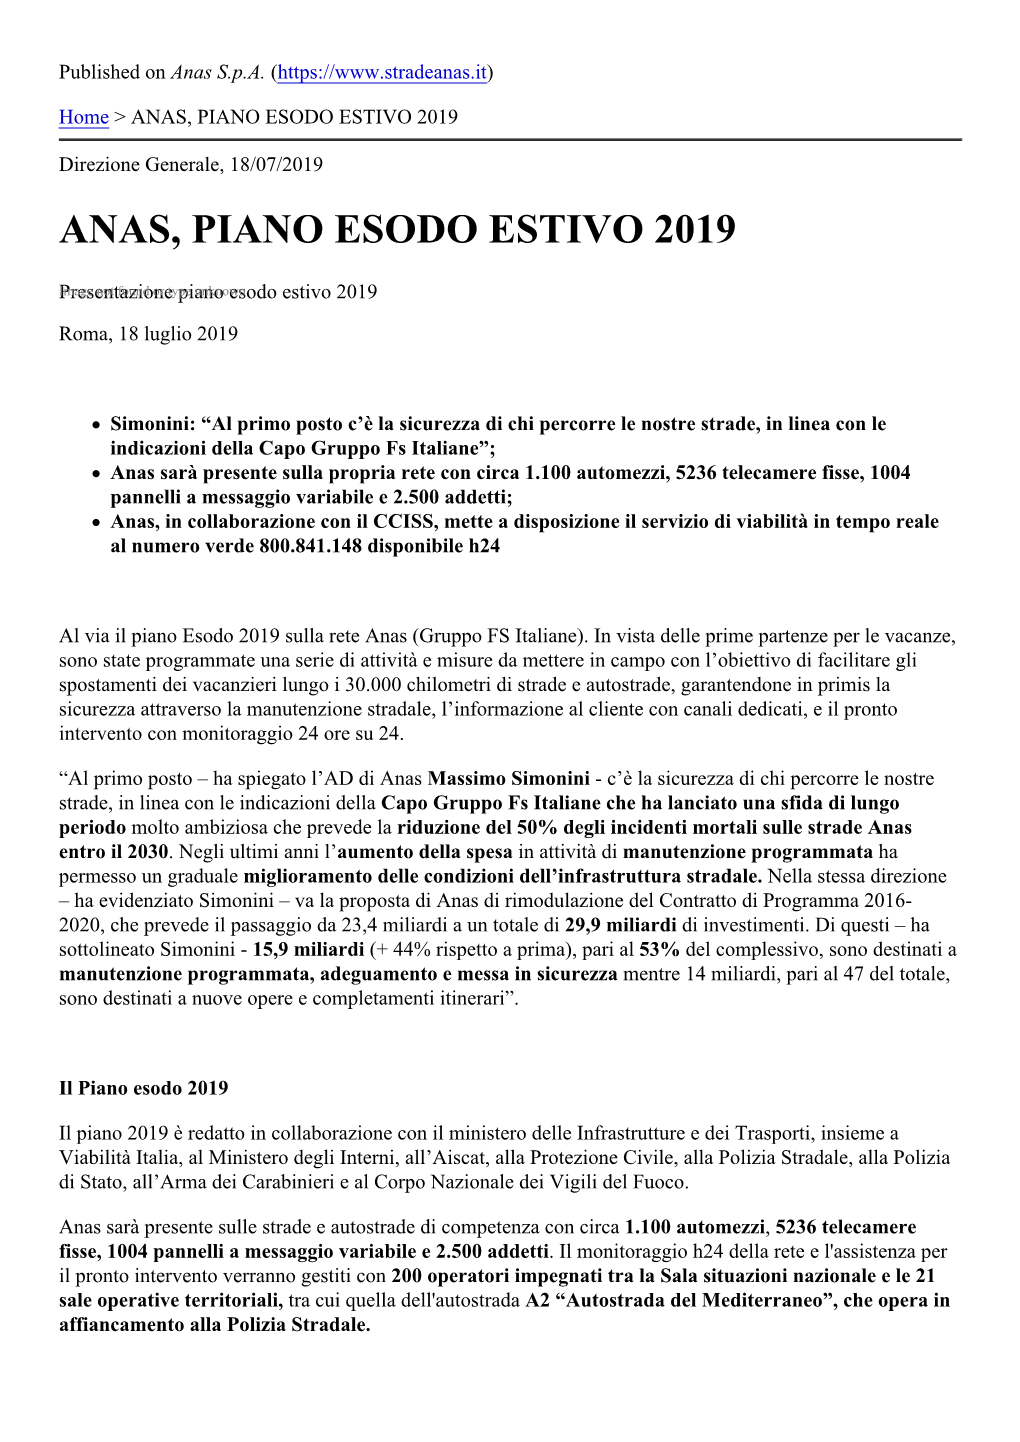 Anas, Piano Esodo Estivo 2019